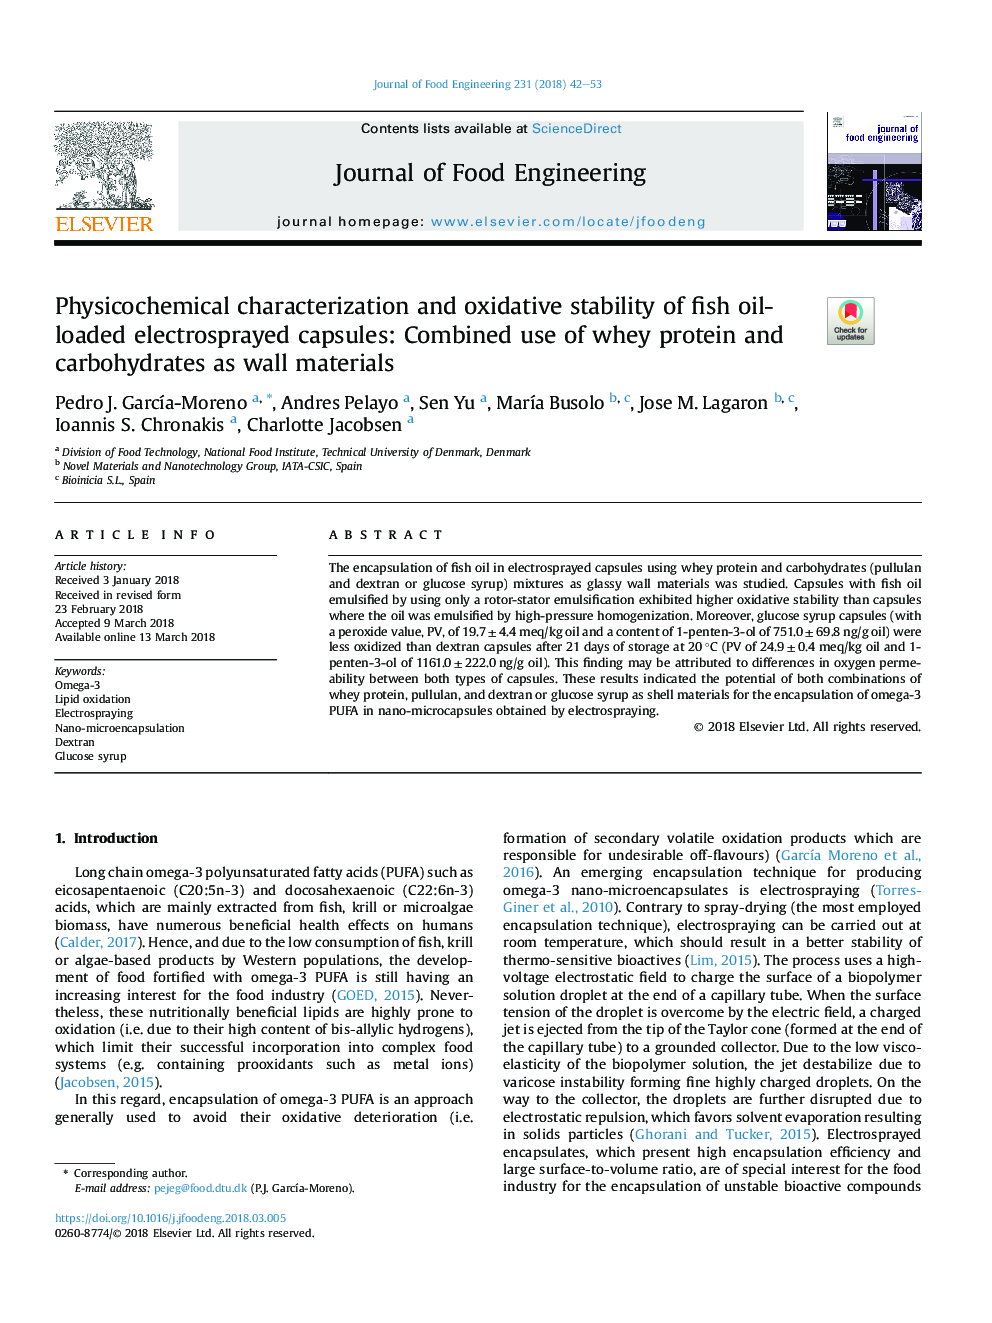 مشخصات فیزیکوشیمیایی و پایداری اکسیداتیو کپسول های الکترو اسپری روغن ماهی: استفاده ترکیبی پروتئین و کربوهیدرات های پنیر به عنوان مواد دیوار 